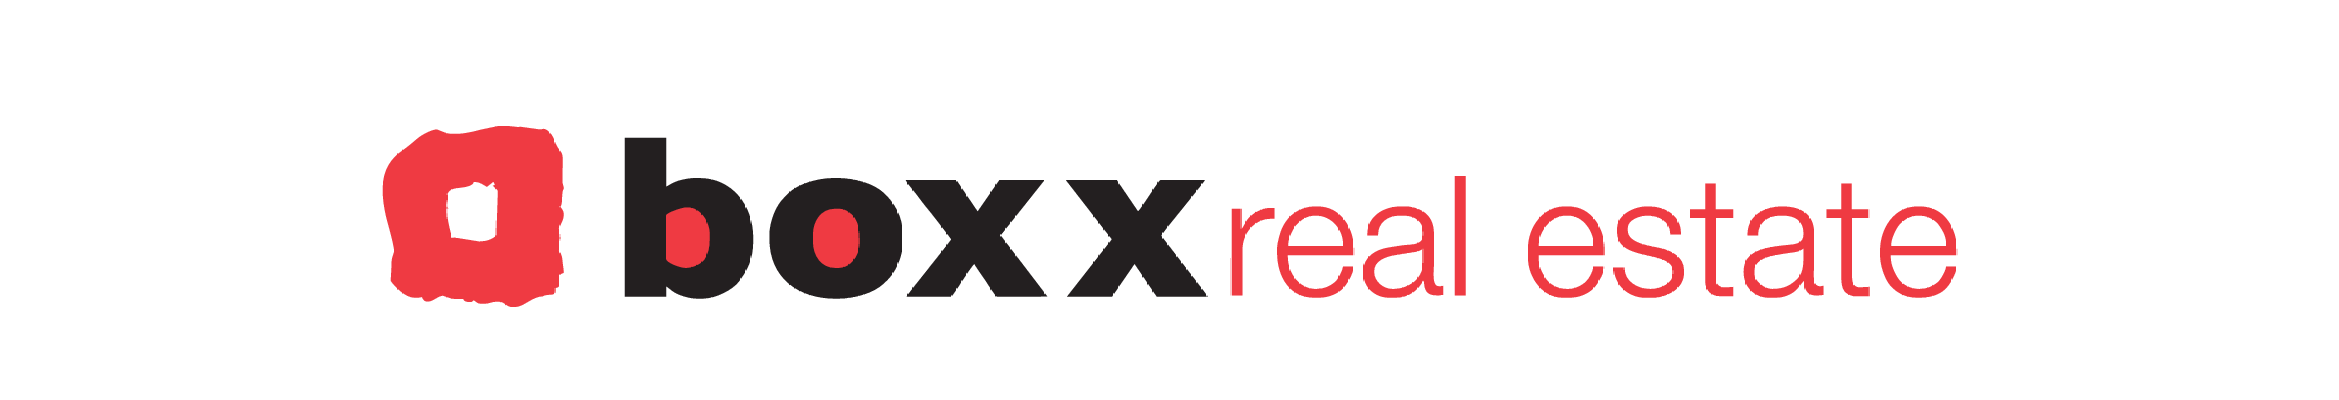 Boxx Real Estate logo